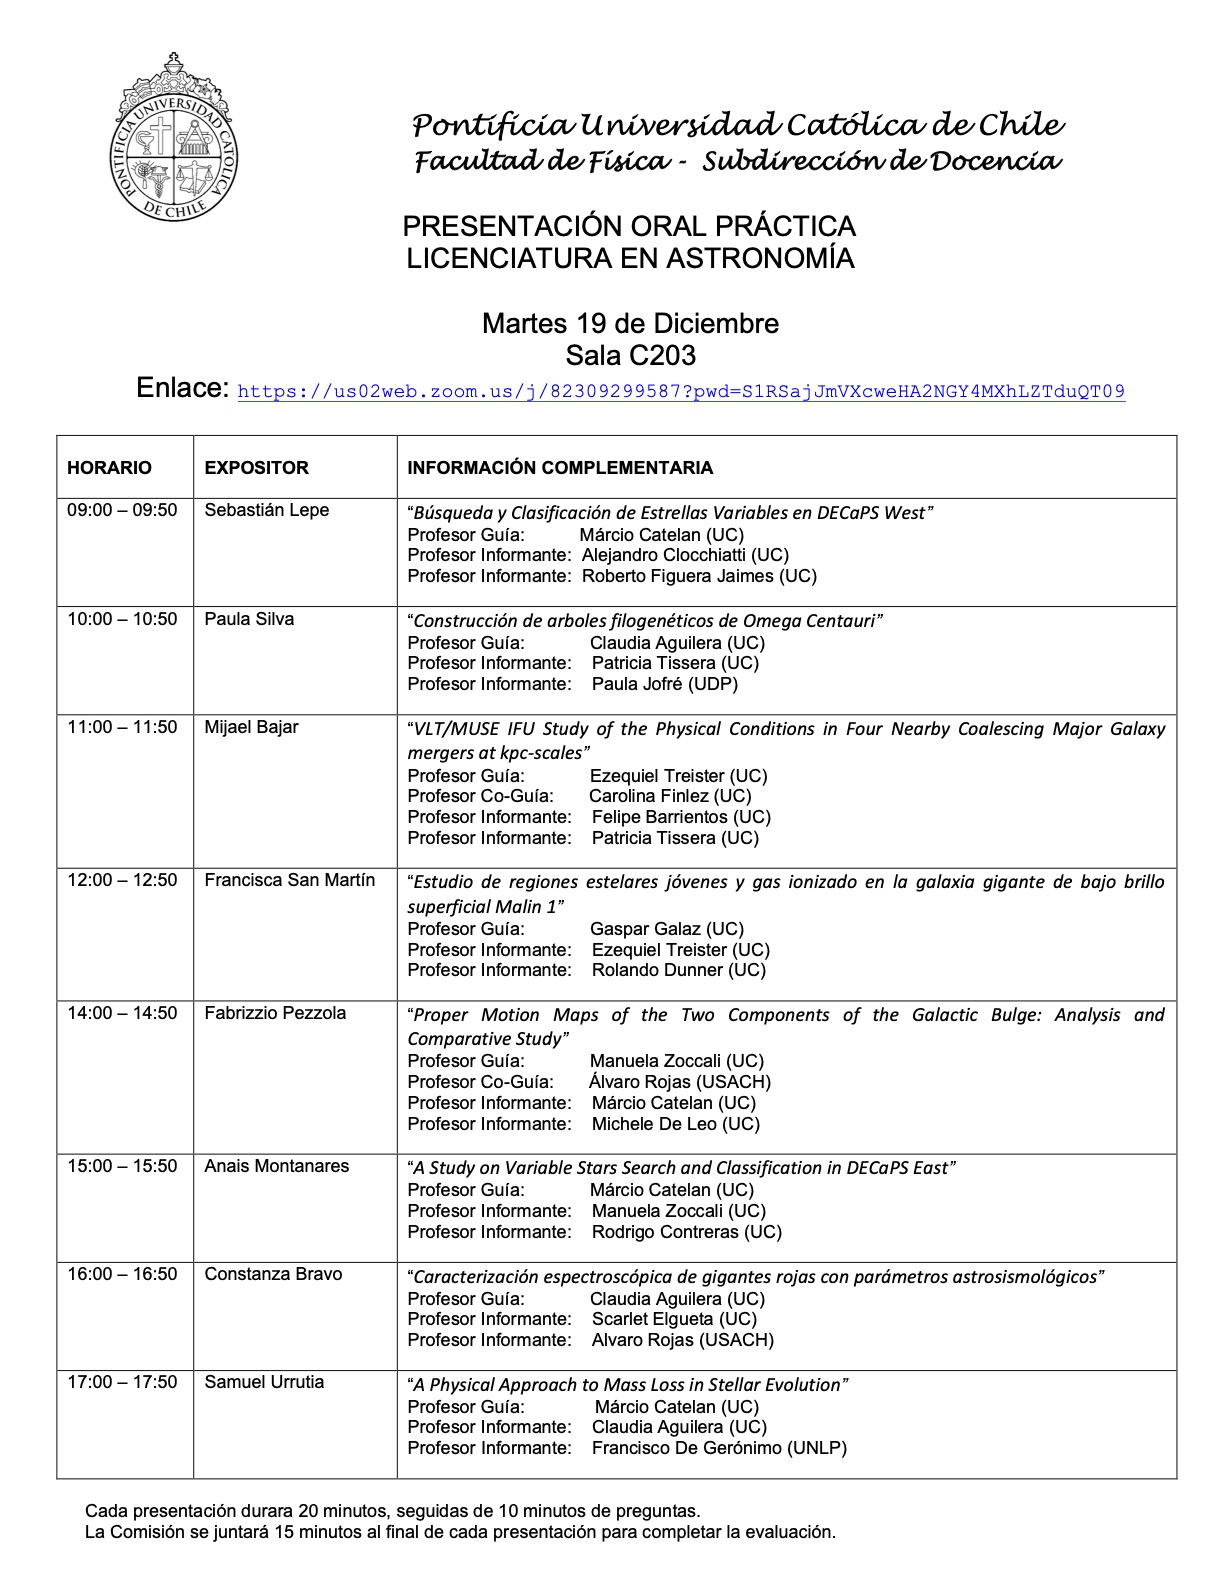 Calendario Practicas de Licenciatura IA 22023 19.12.2023 publicar